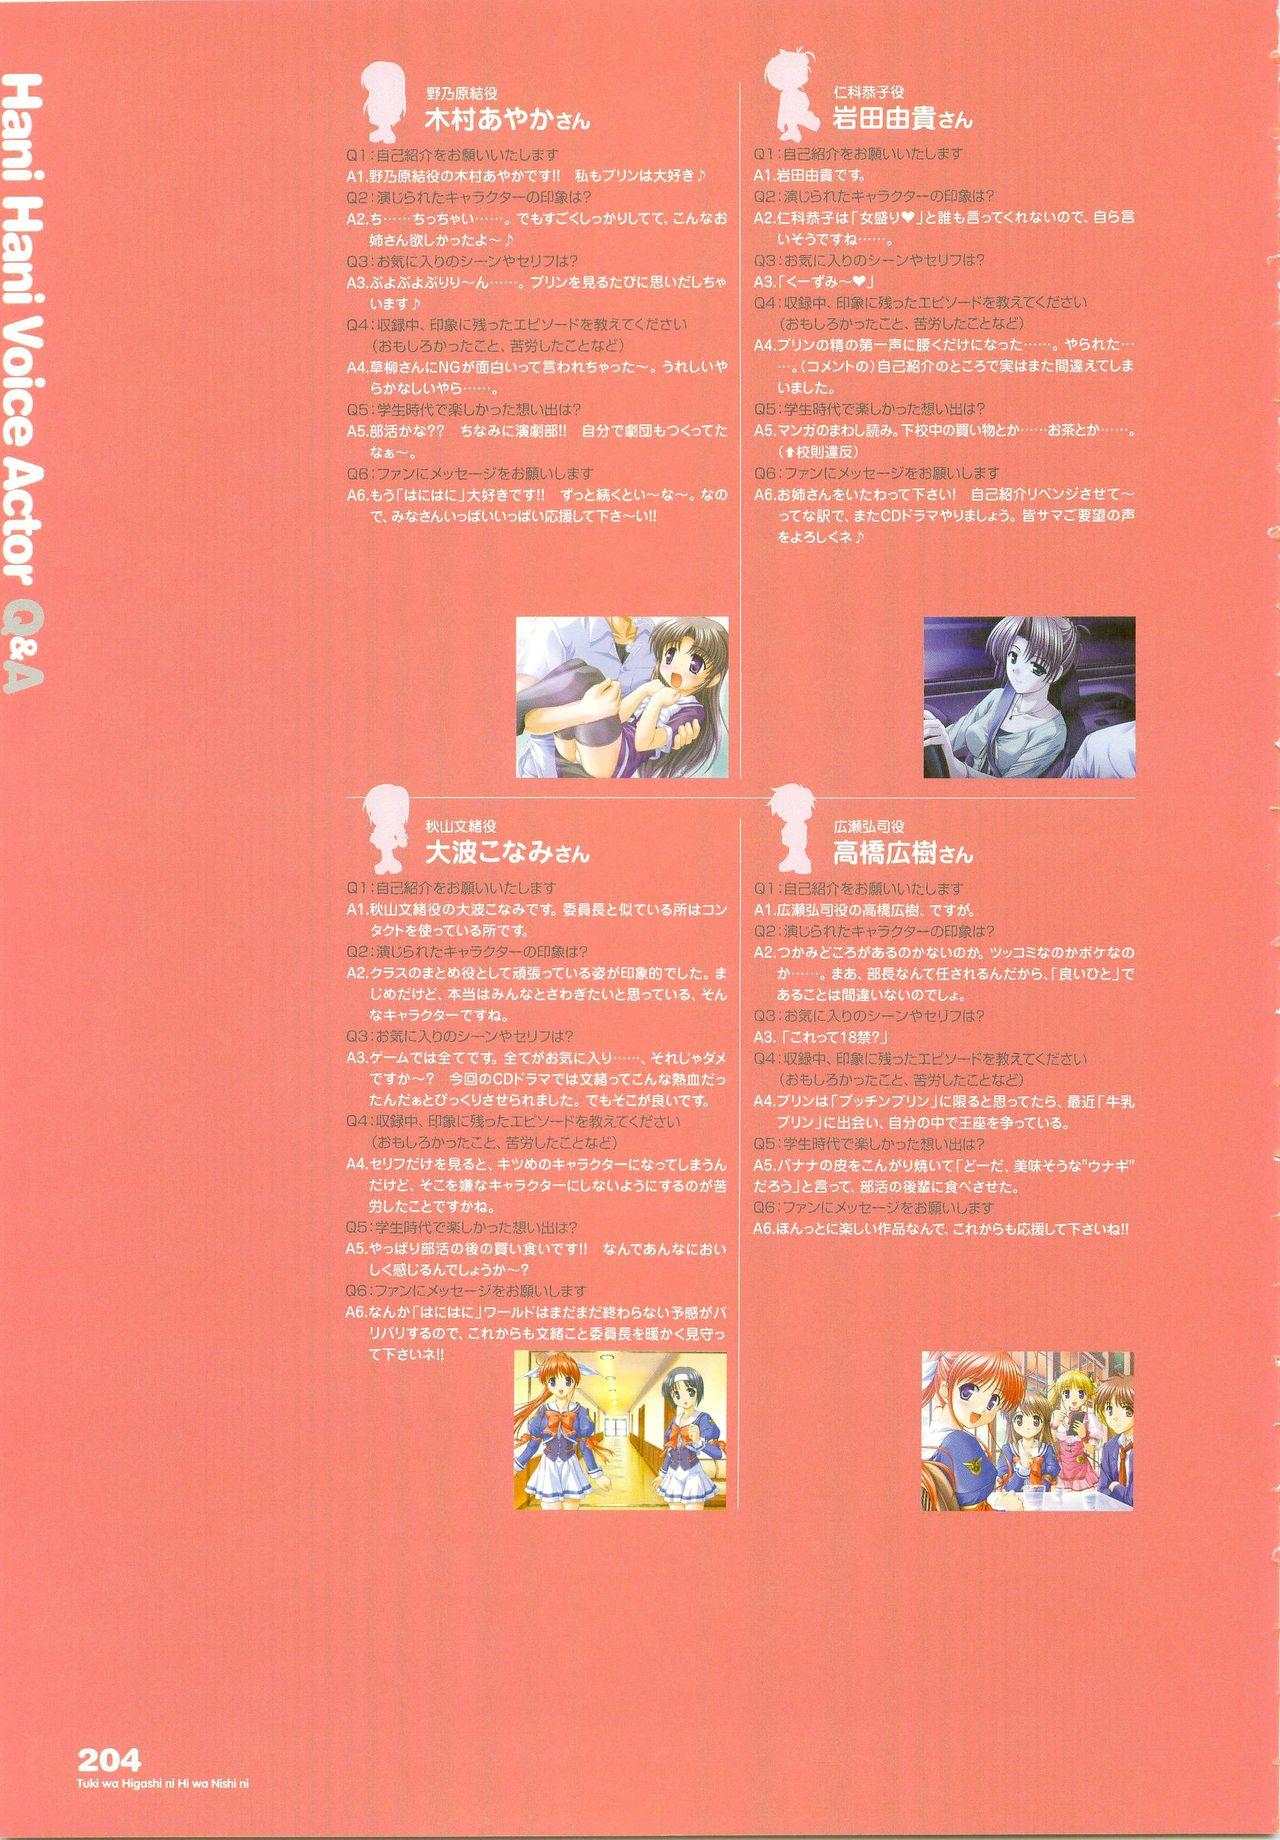 Tsuki wa Higashi ni Hi wa Nishi ni - Operation Sanctuary - Visual Fan Book Shokai Ban 245